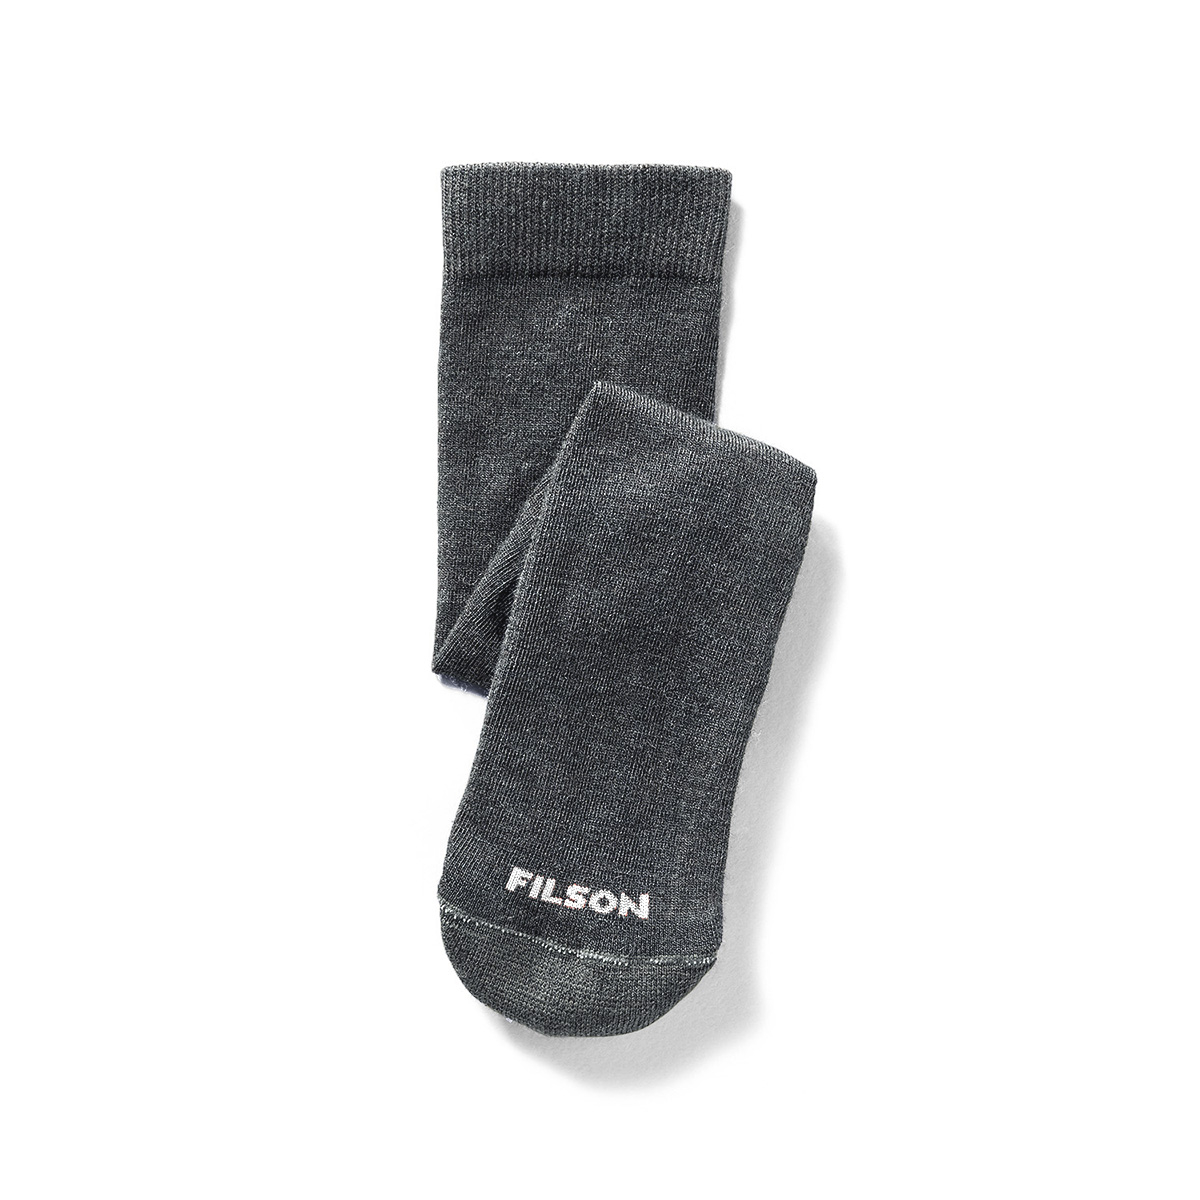 Filson Everyday Crew Sock Charcoal. Versatile, midweight socks mit mittelstarken Polsterung und Merinowoll-Mix